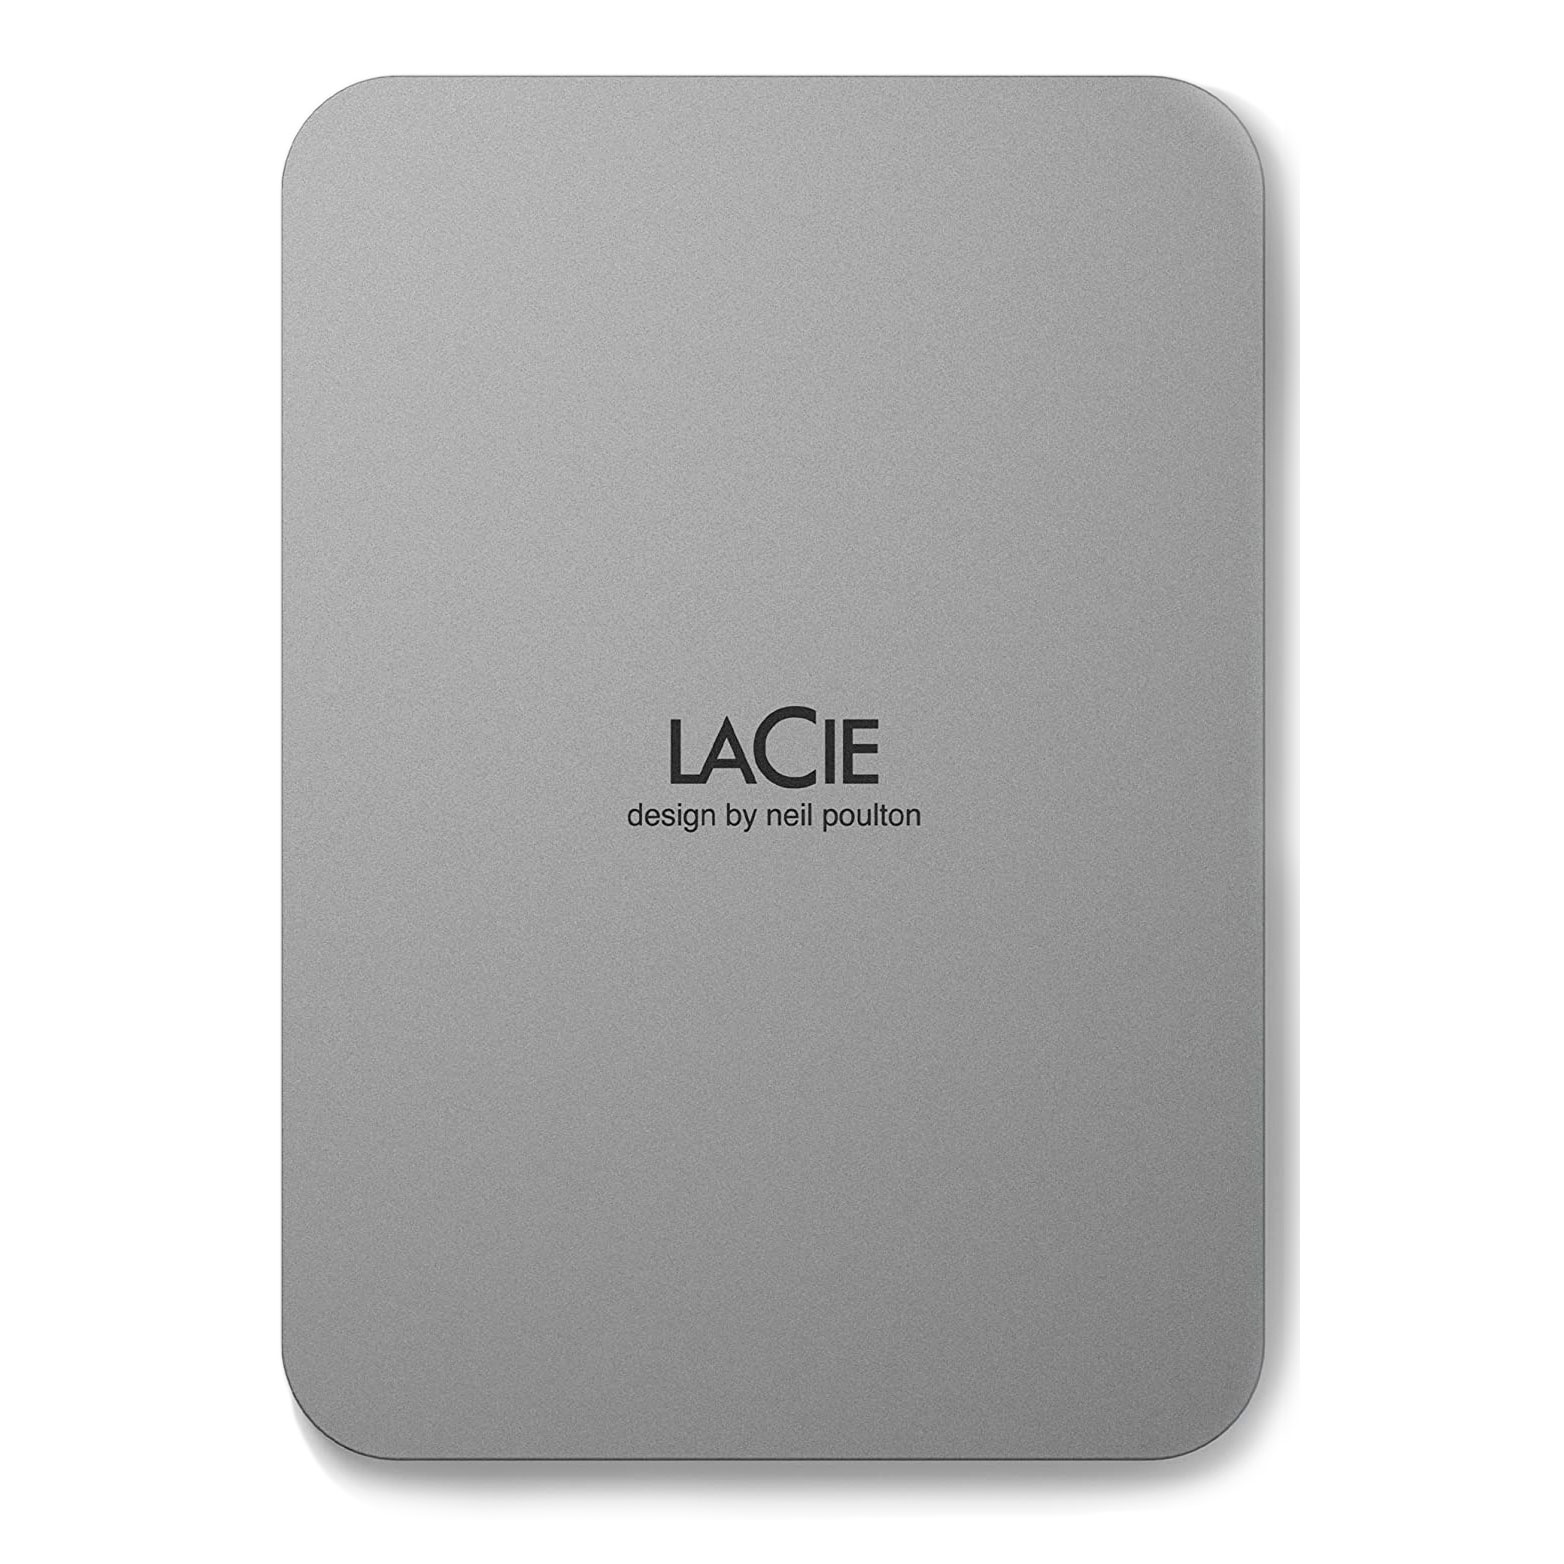 Внешний жесткий диск LaCie Mobile Drive, 2ТБ, серебристый маклеод синдерс moneybunnies заработай накопи потрать правильно